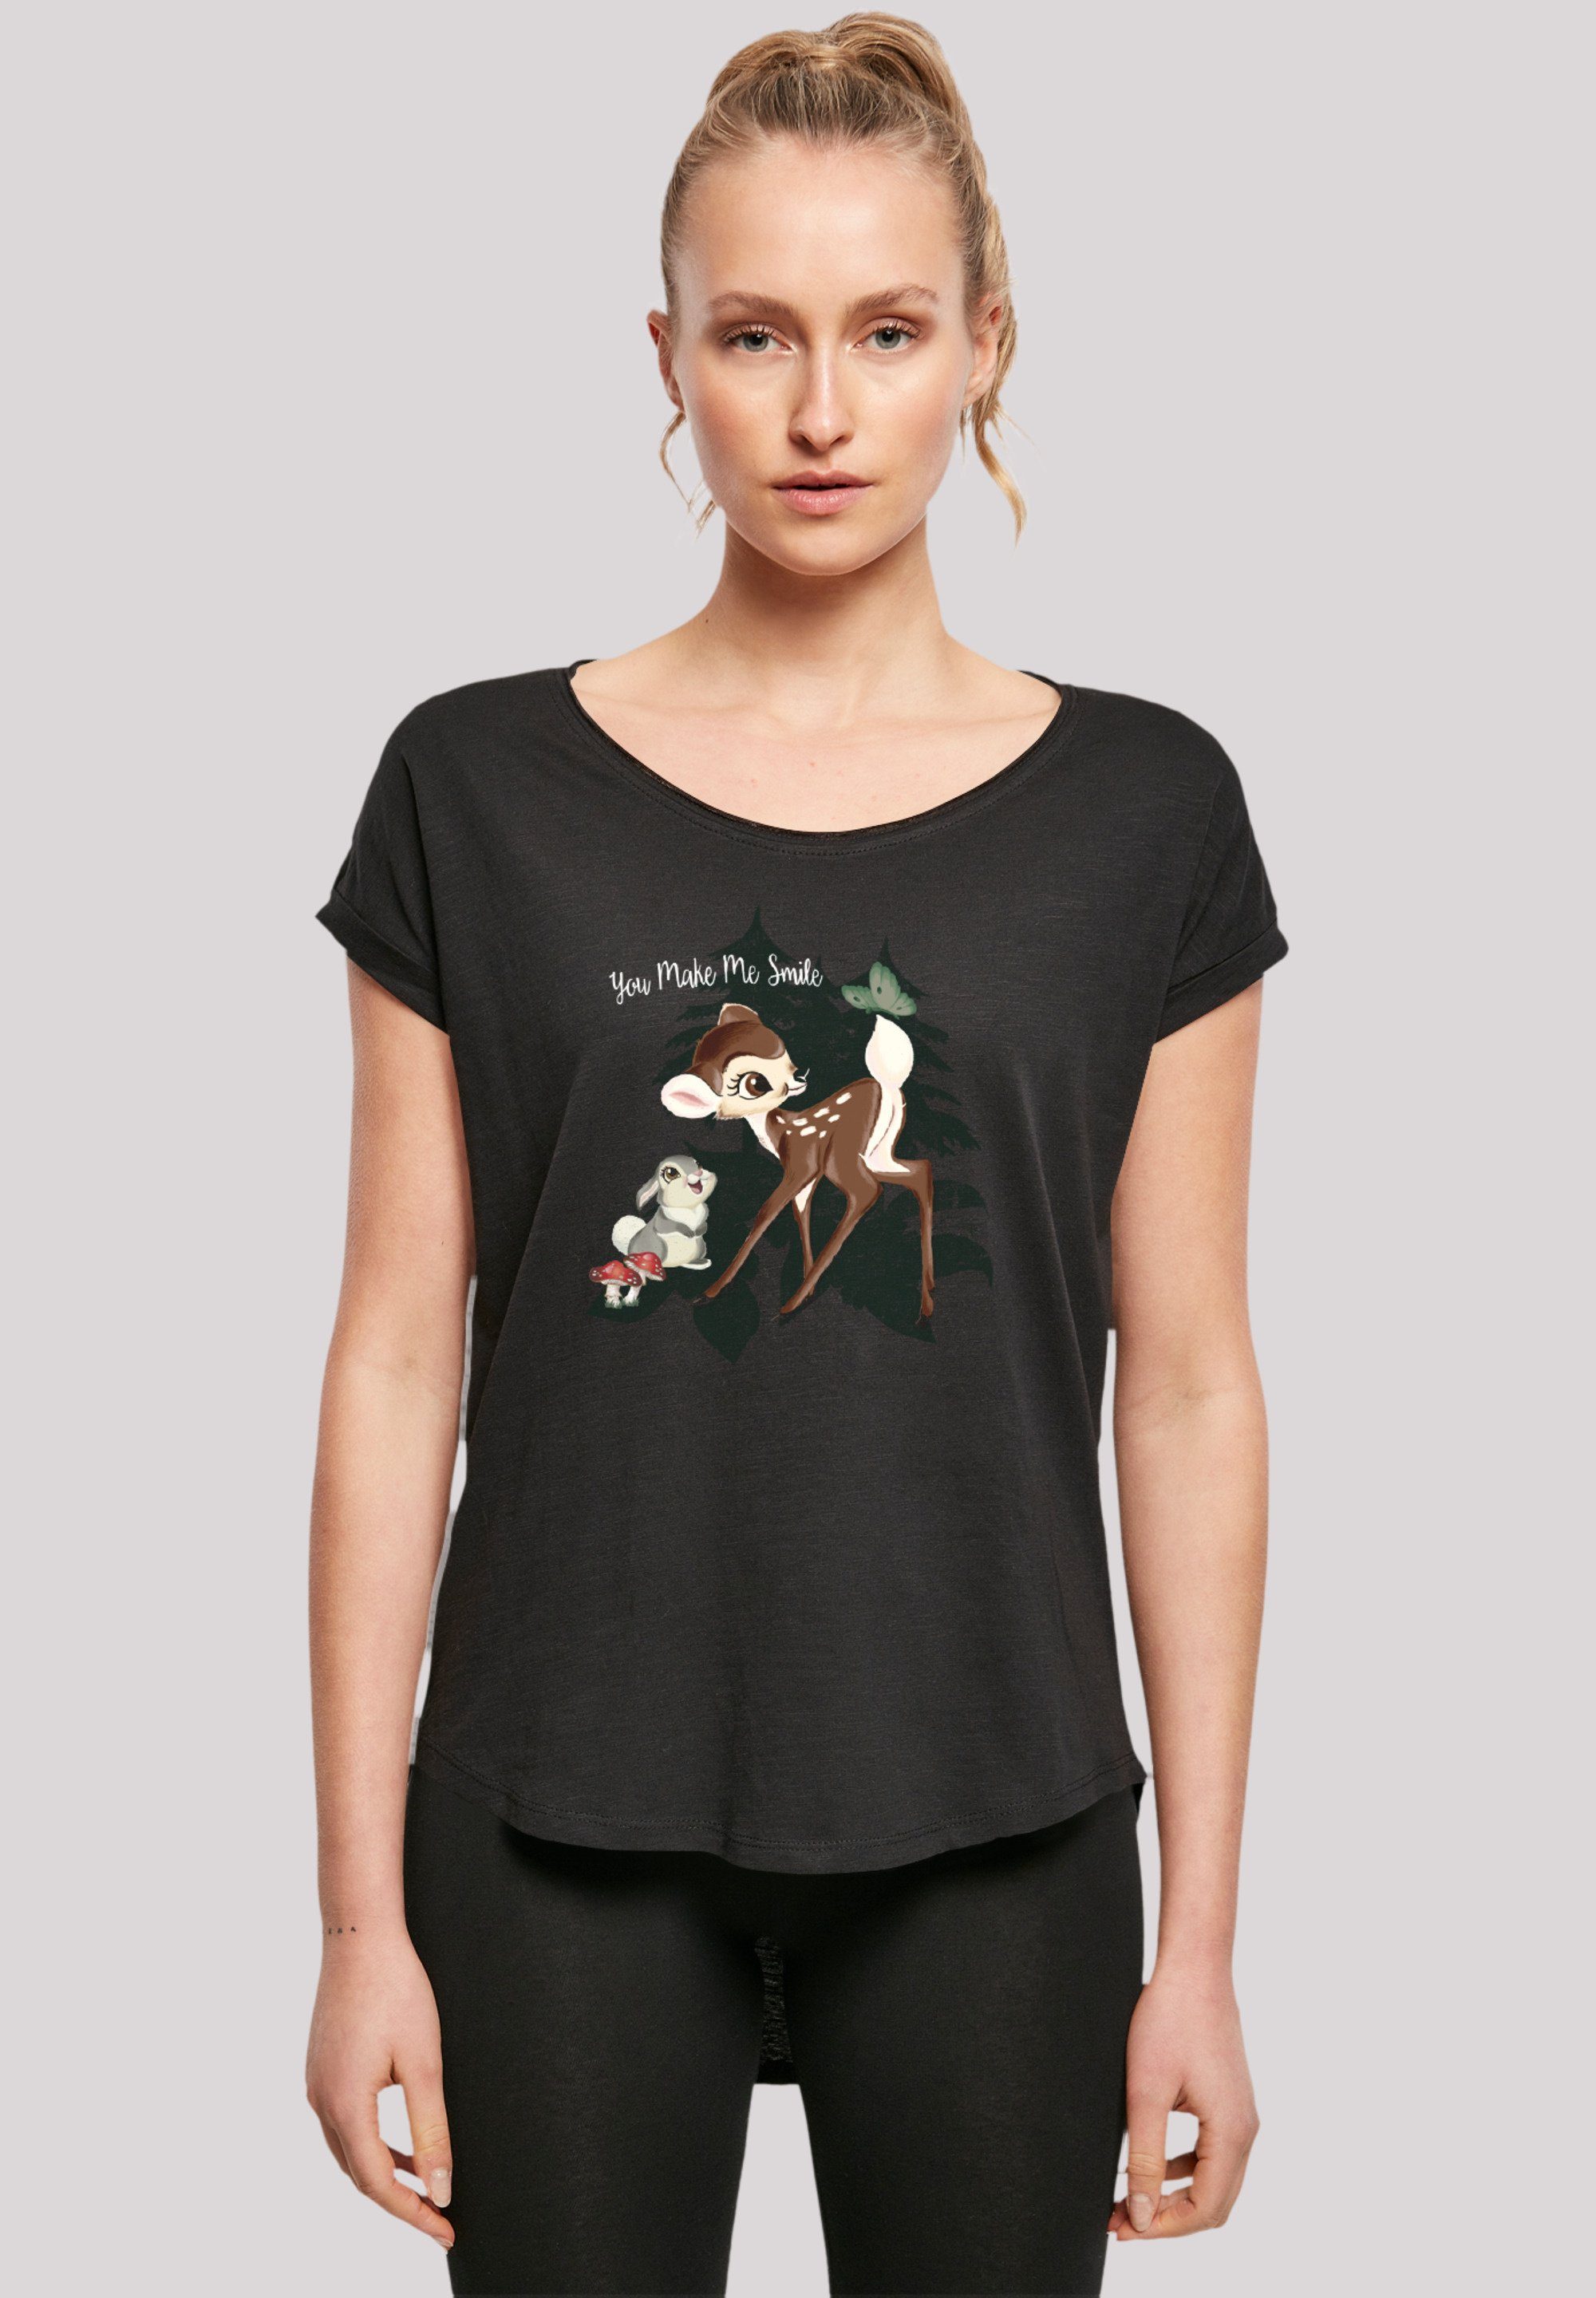 F4NT4STIC T-Shirt Disney Bambi Smile Premium Qualität, Sehr weicher  Baumwollstoff mit hohem Tragekomfort